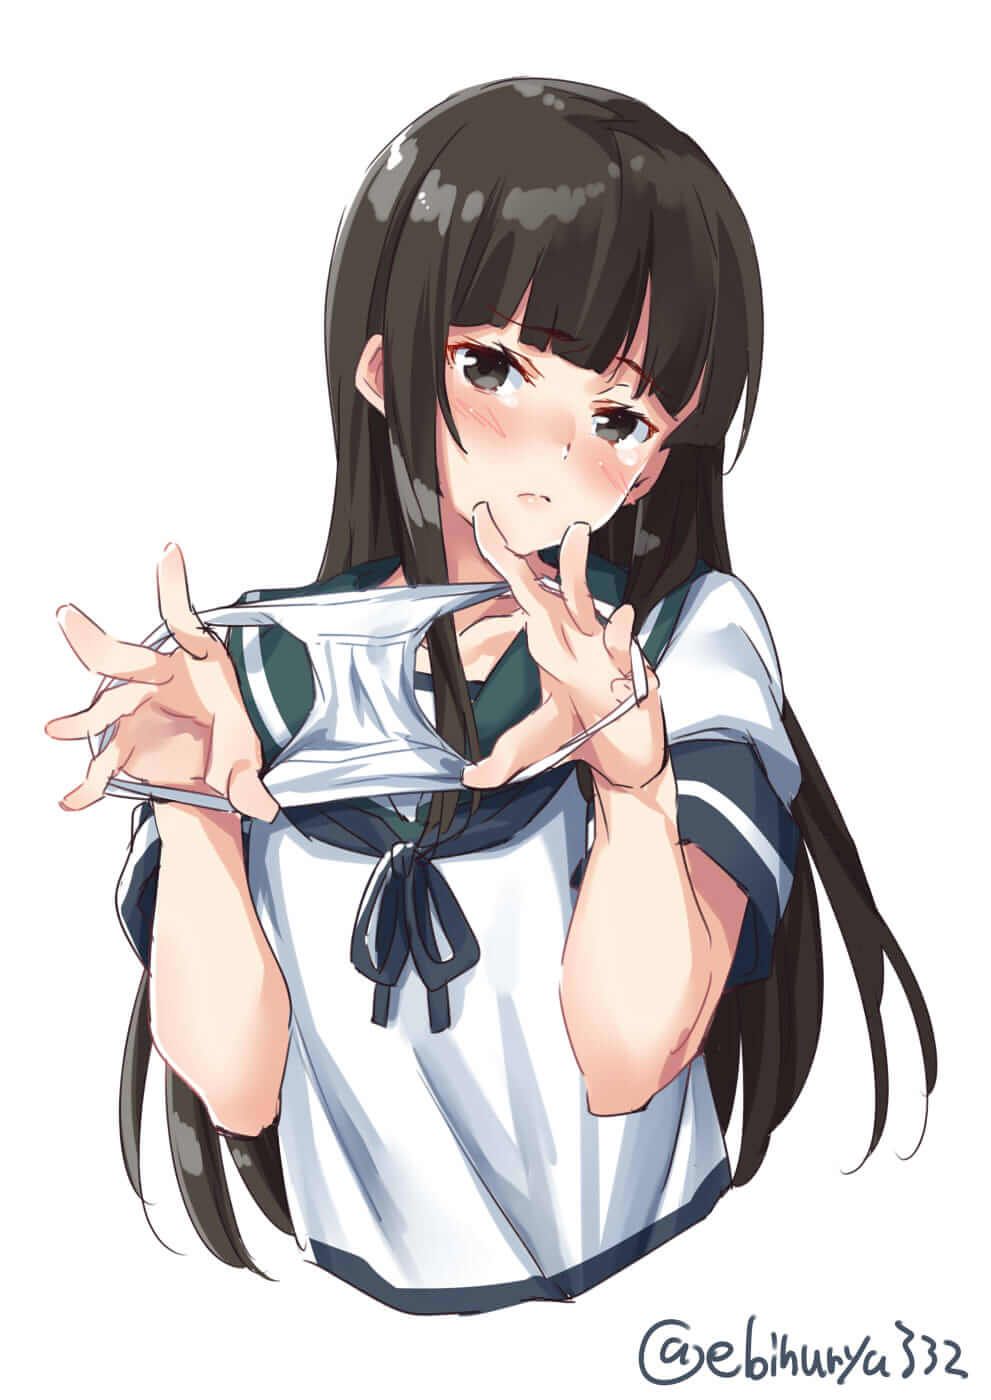 【2D】Erotic cute image of schoolgirl wearing school uniform (blazer sailor) 19